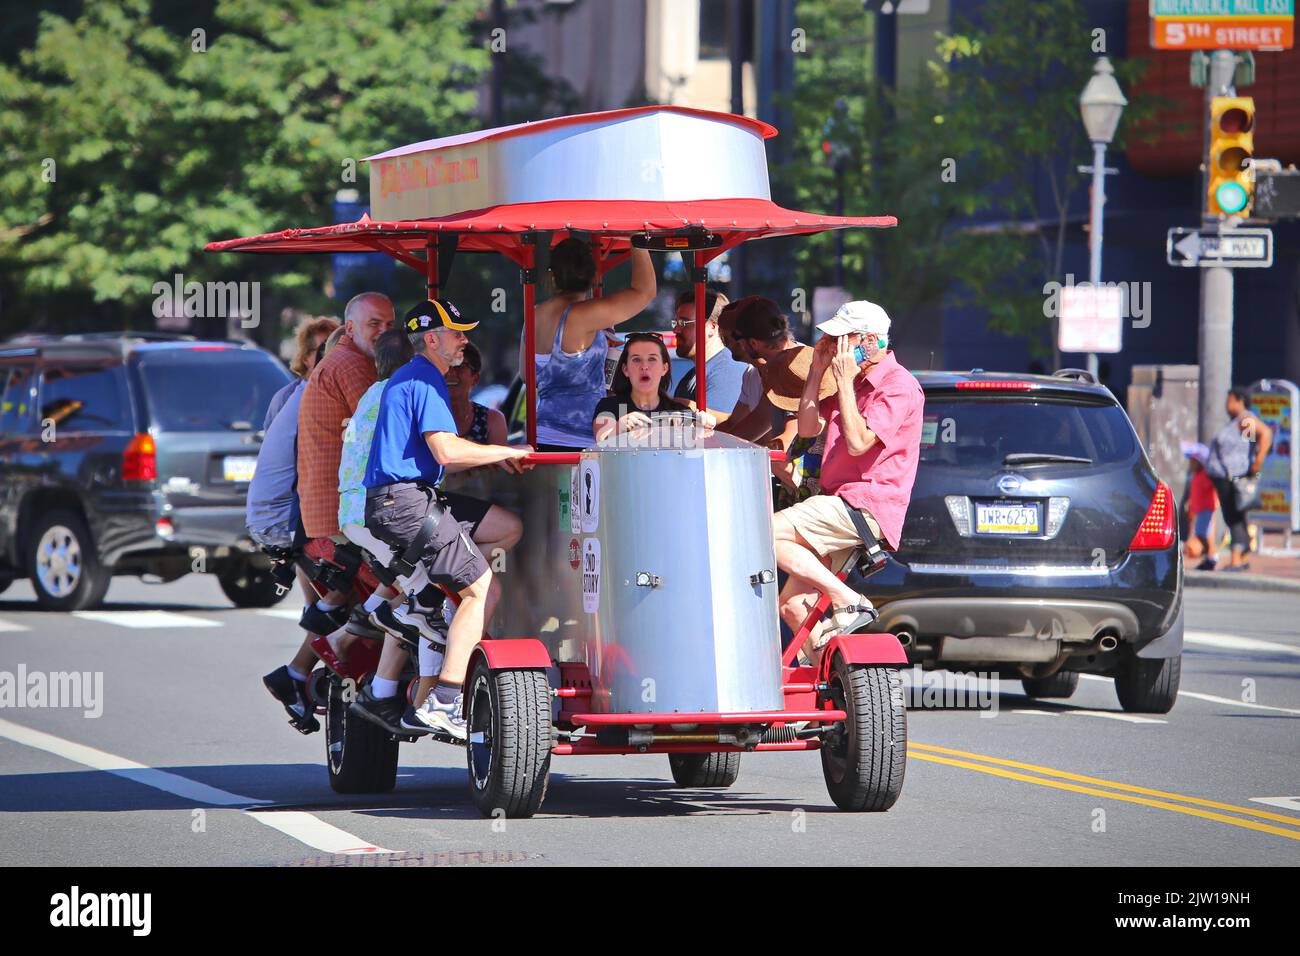 L'unico Big Red Pedicycle è un autobus ciclabile che trasporta 15 passeggeri, alimentati da pedalando dei passeggeri. Philadelphia, USA - Agosto 2019 Foto Stock